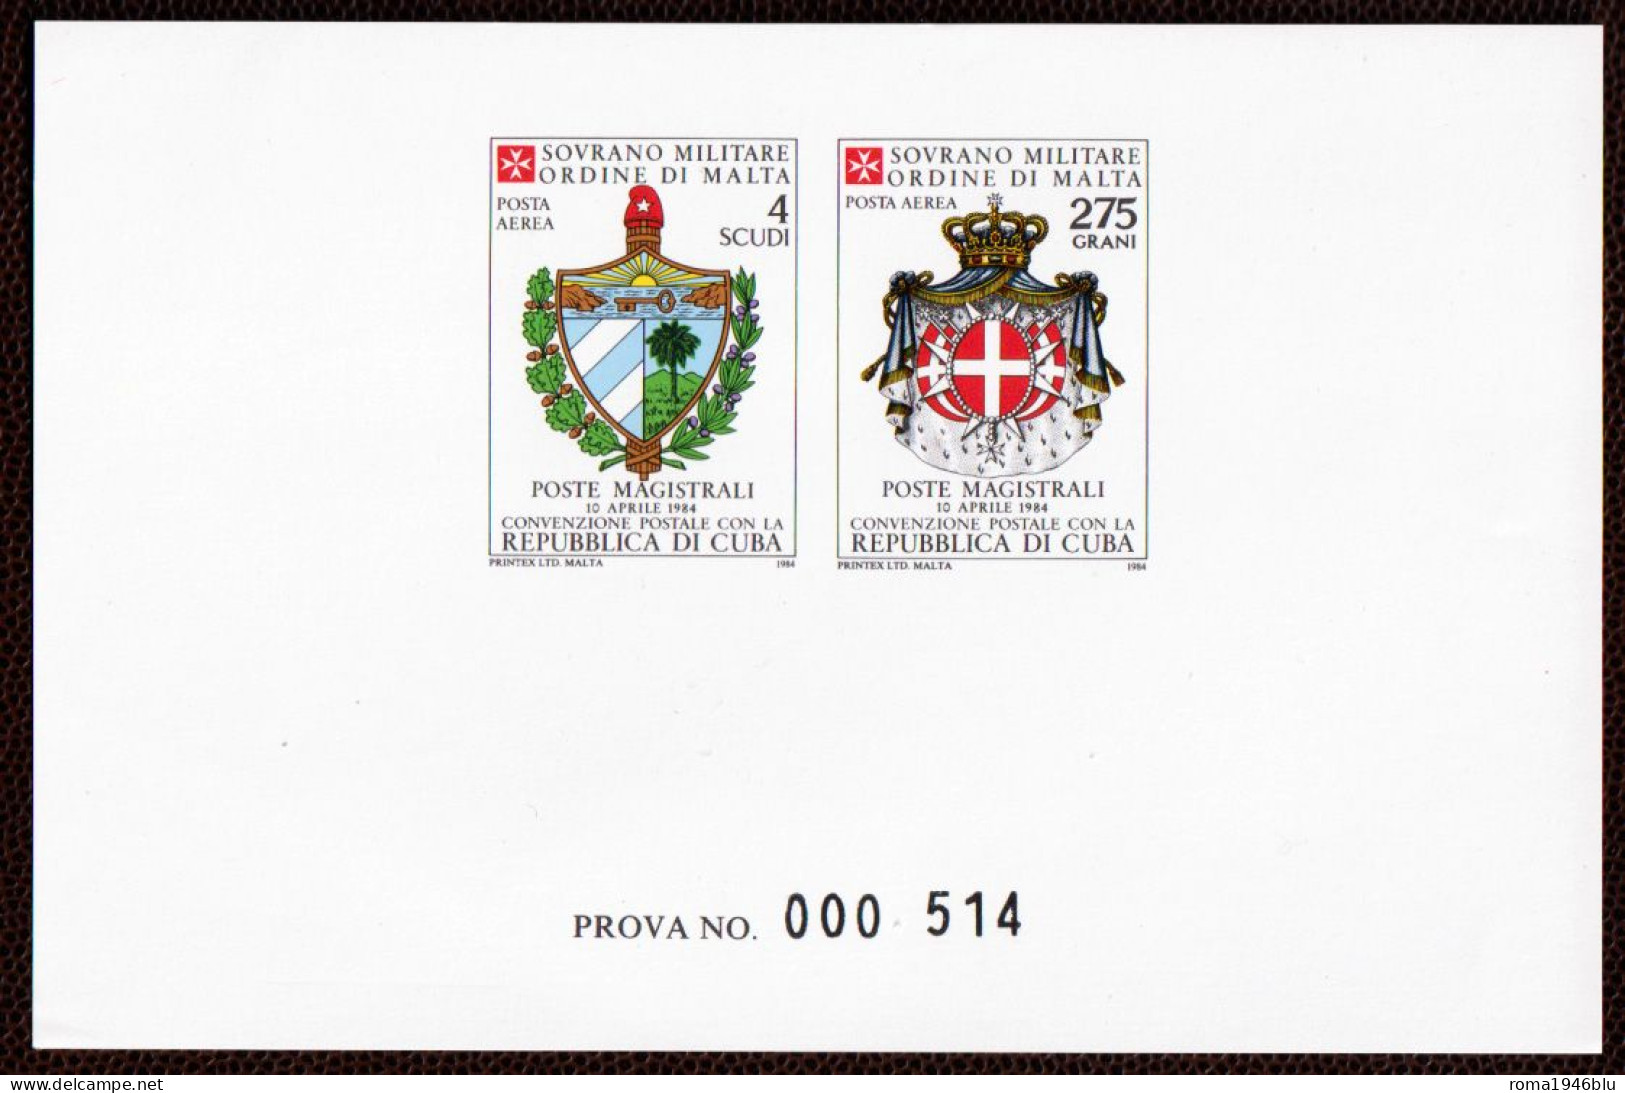 SMOM PROVE 1984 Unif.A11/12 Perfetta/VF - Malta (la Orden De)